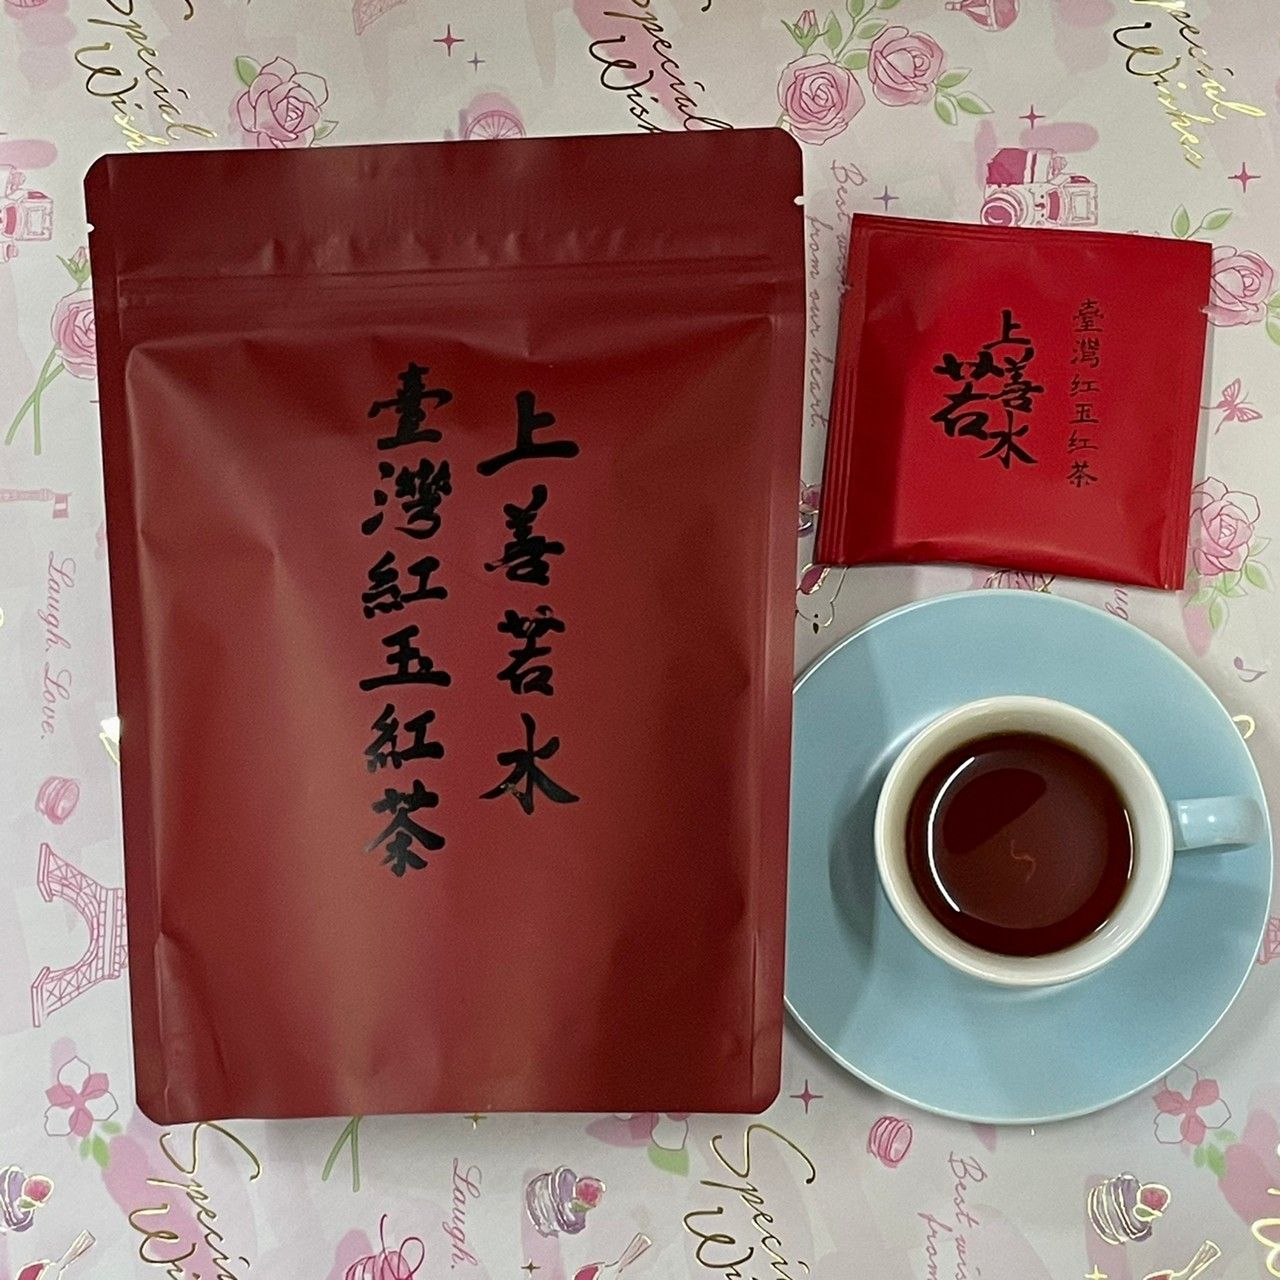 台灣紅茶10入裝 上善若水 台灣品牌 南投小農